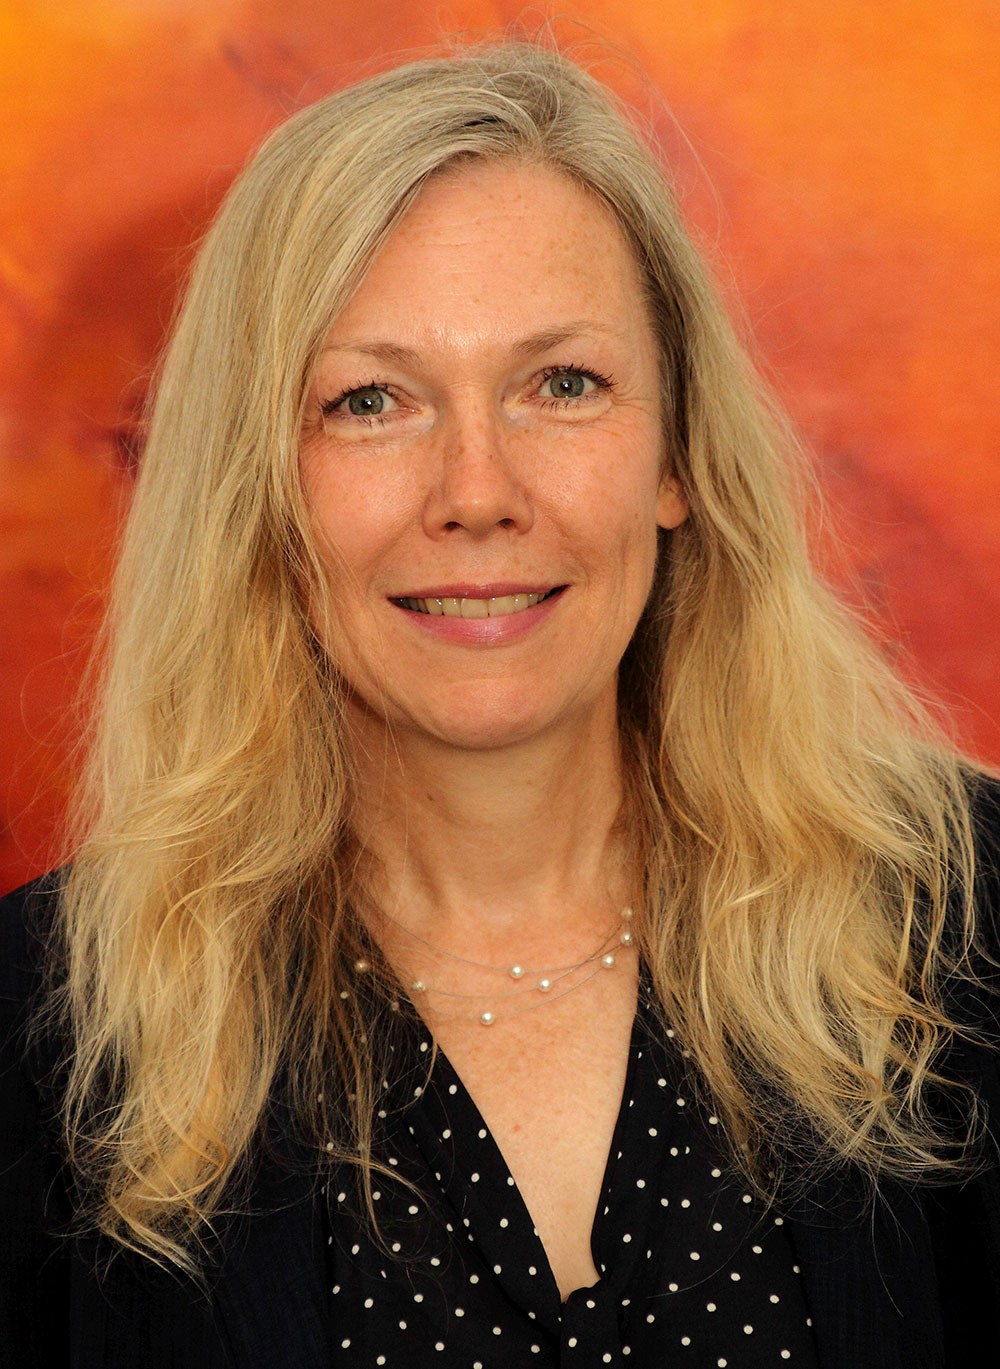 Suchtprävention: Porträt von Neurologin und Psychiaterin Dr. Monika Vogelgesang. Sie hat längere blonde Haare und trägt eine dunkle Bluse.